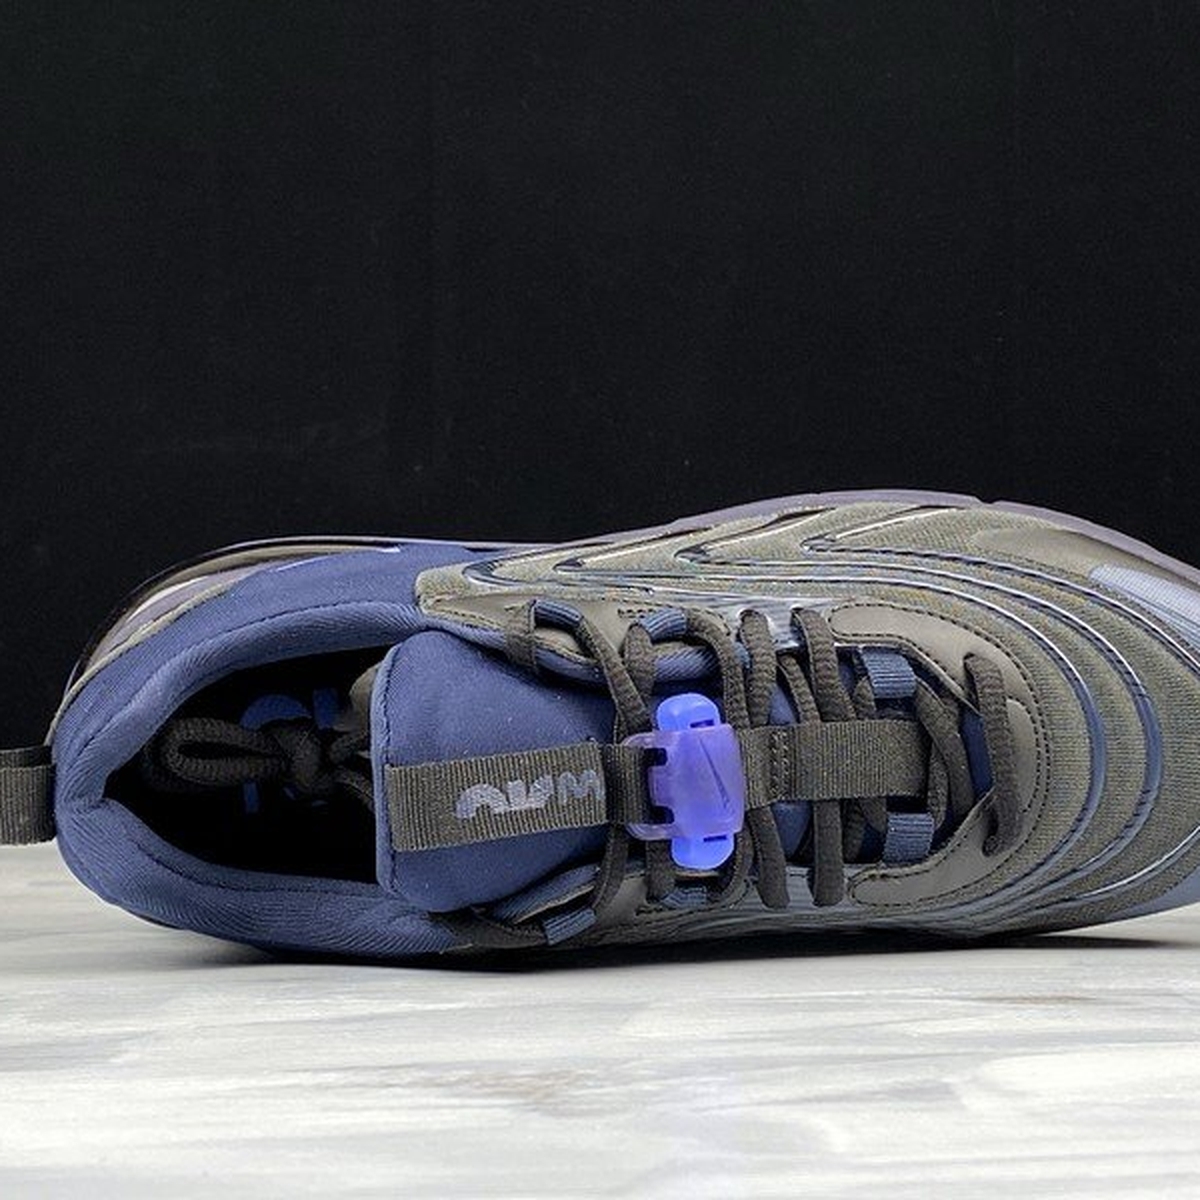 Nike Air Max 270 React ENG Black/Sapphire - CD0113-001